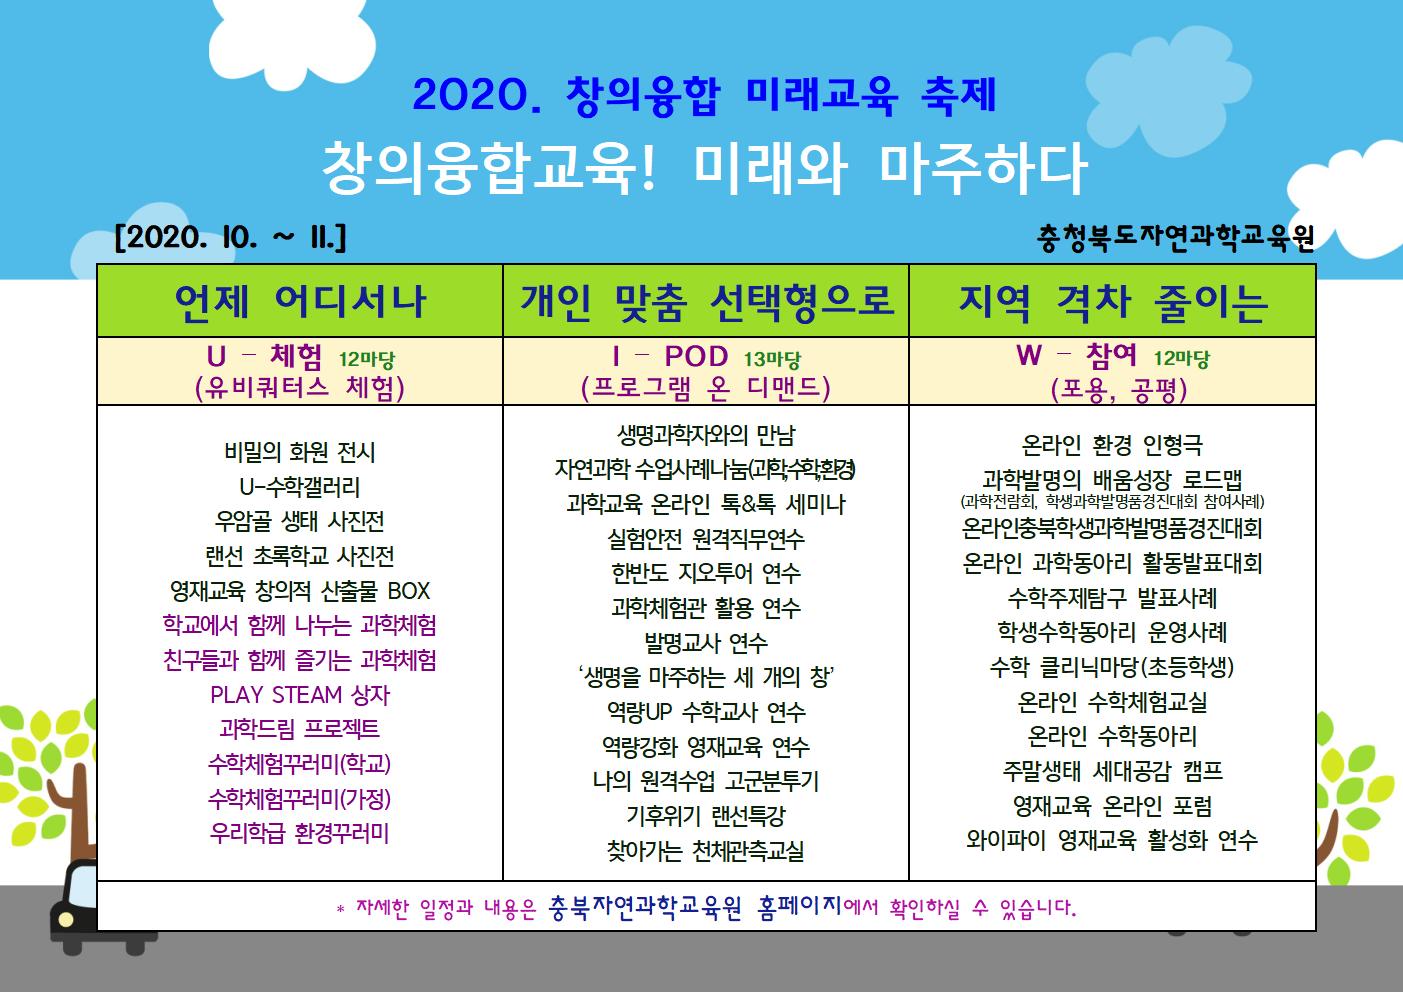 안녕하세요. 충북자연과학교육원 2020. 창의융합 미래교육축제 안내드립니다.